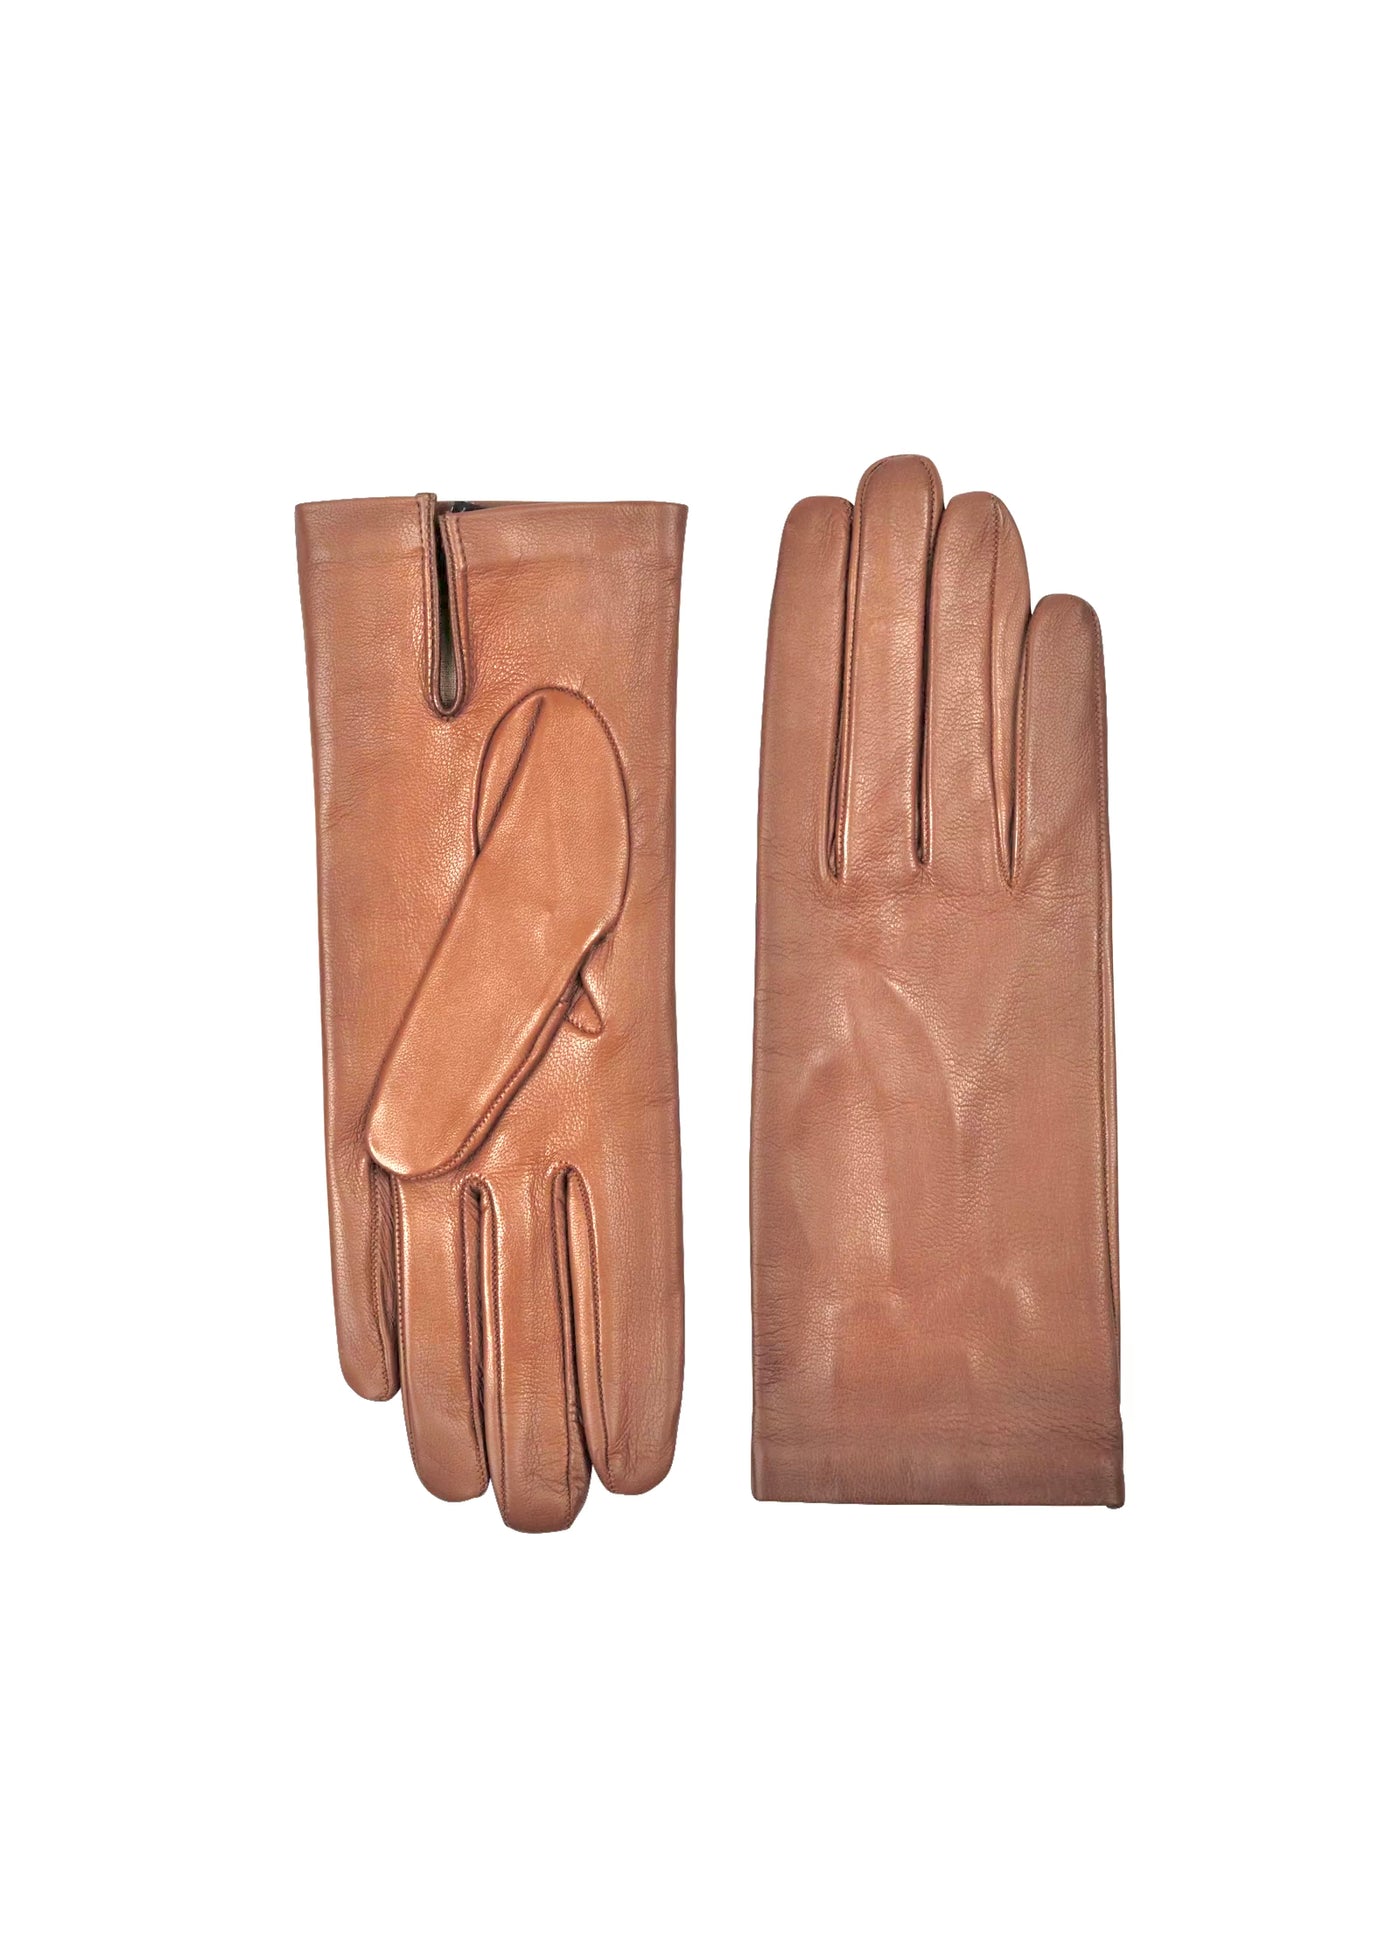 Italian Corto Gloves in Beige